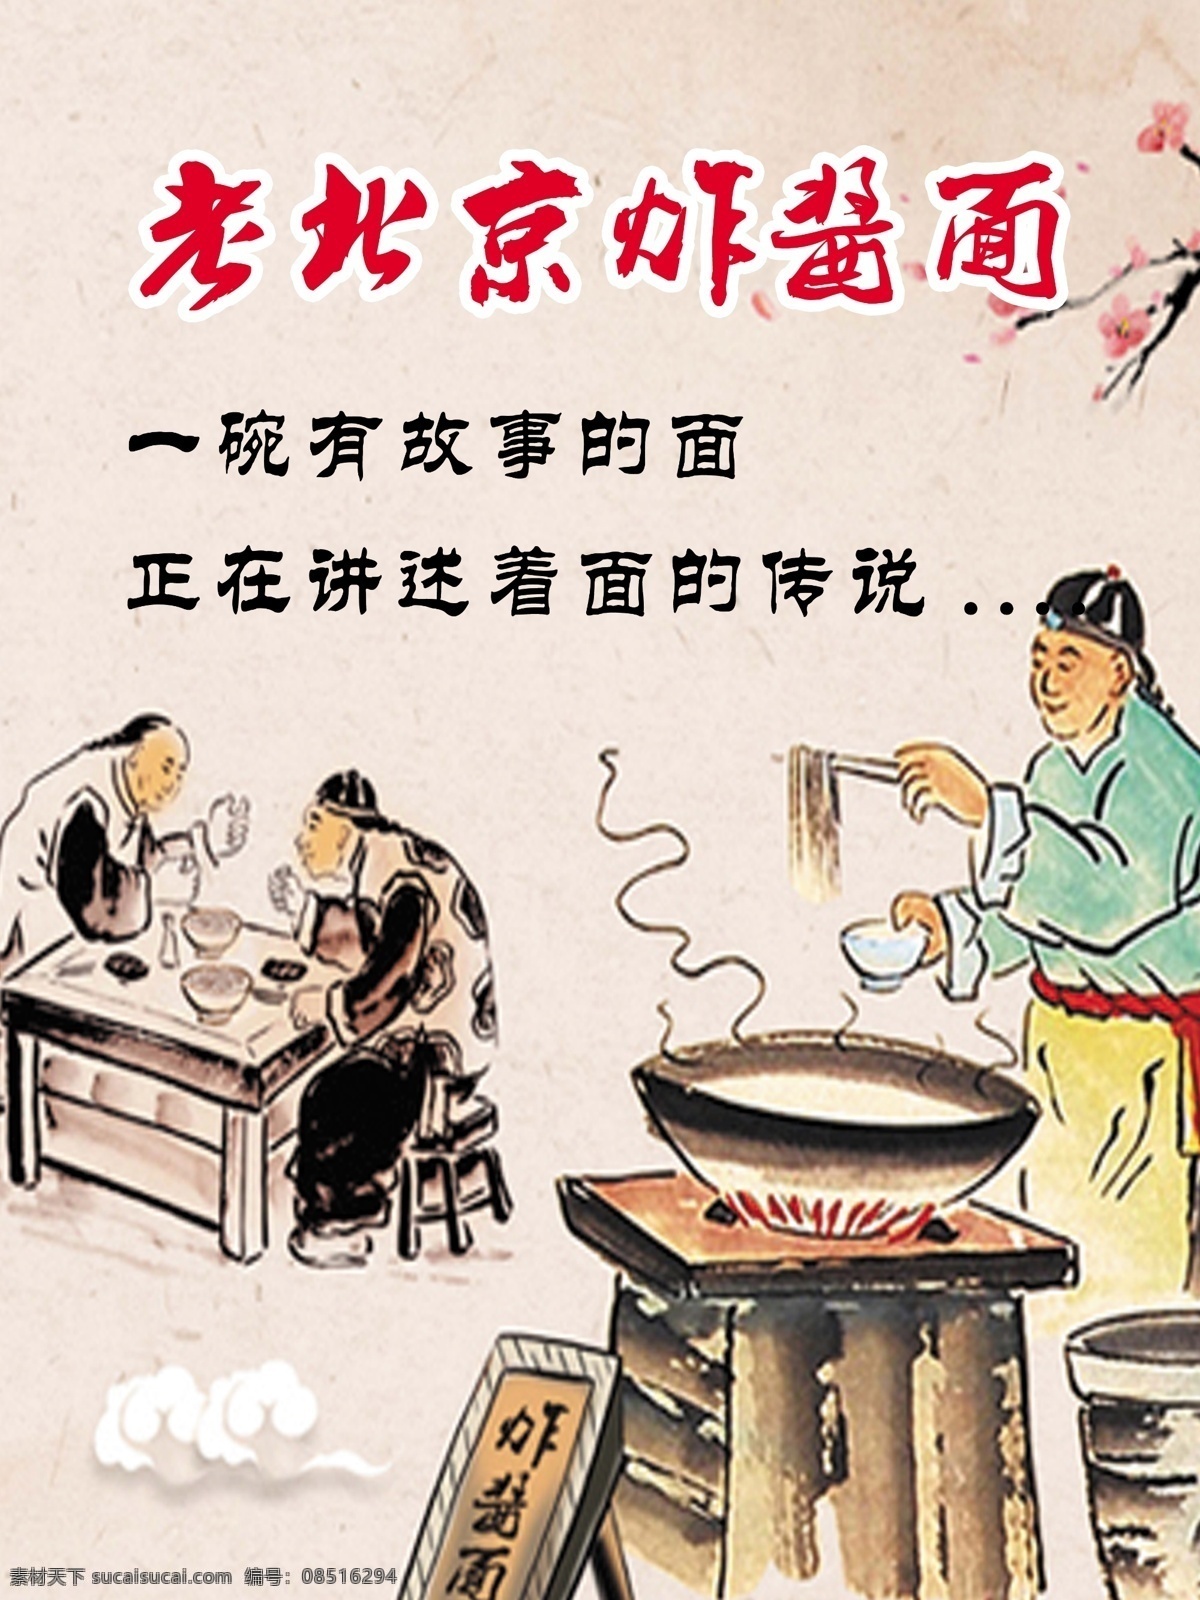 炸酱面 炸酱 面条 面食 食品 老北京 文化艺术 传统文化